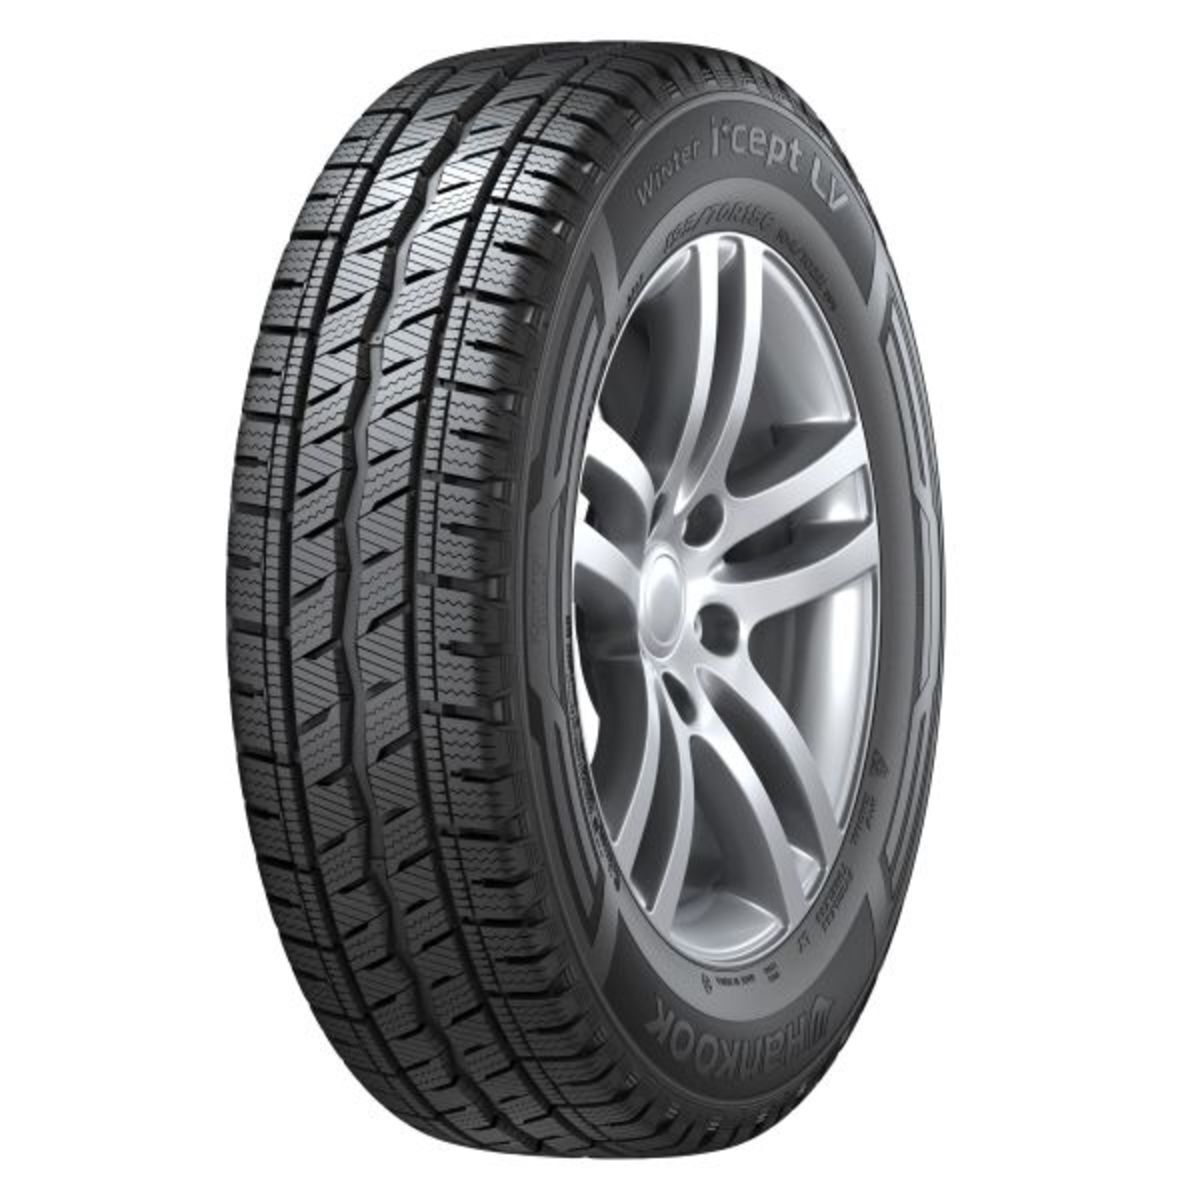 Neumáticos de invierno HANKOOK Winter I*cept LV RW12 205/55R16C, 98/96T TL